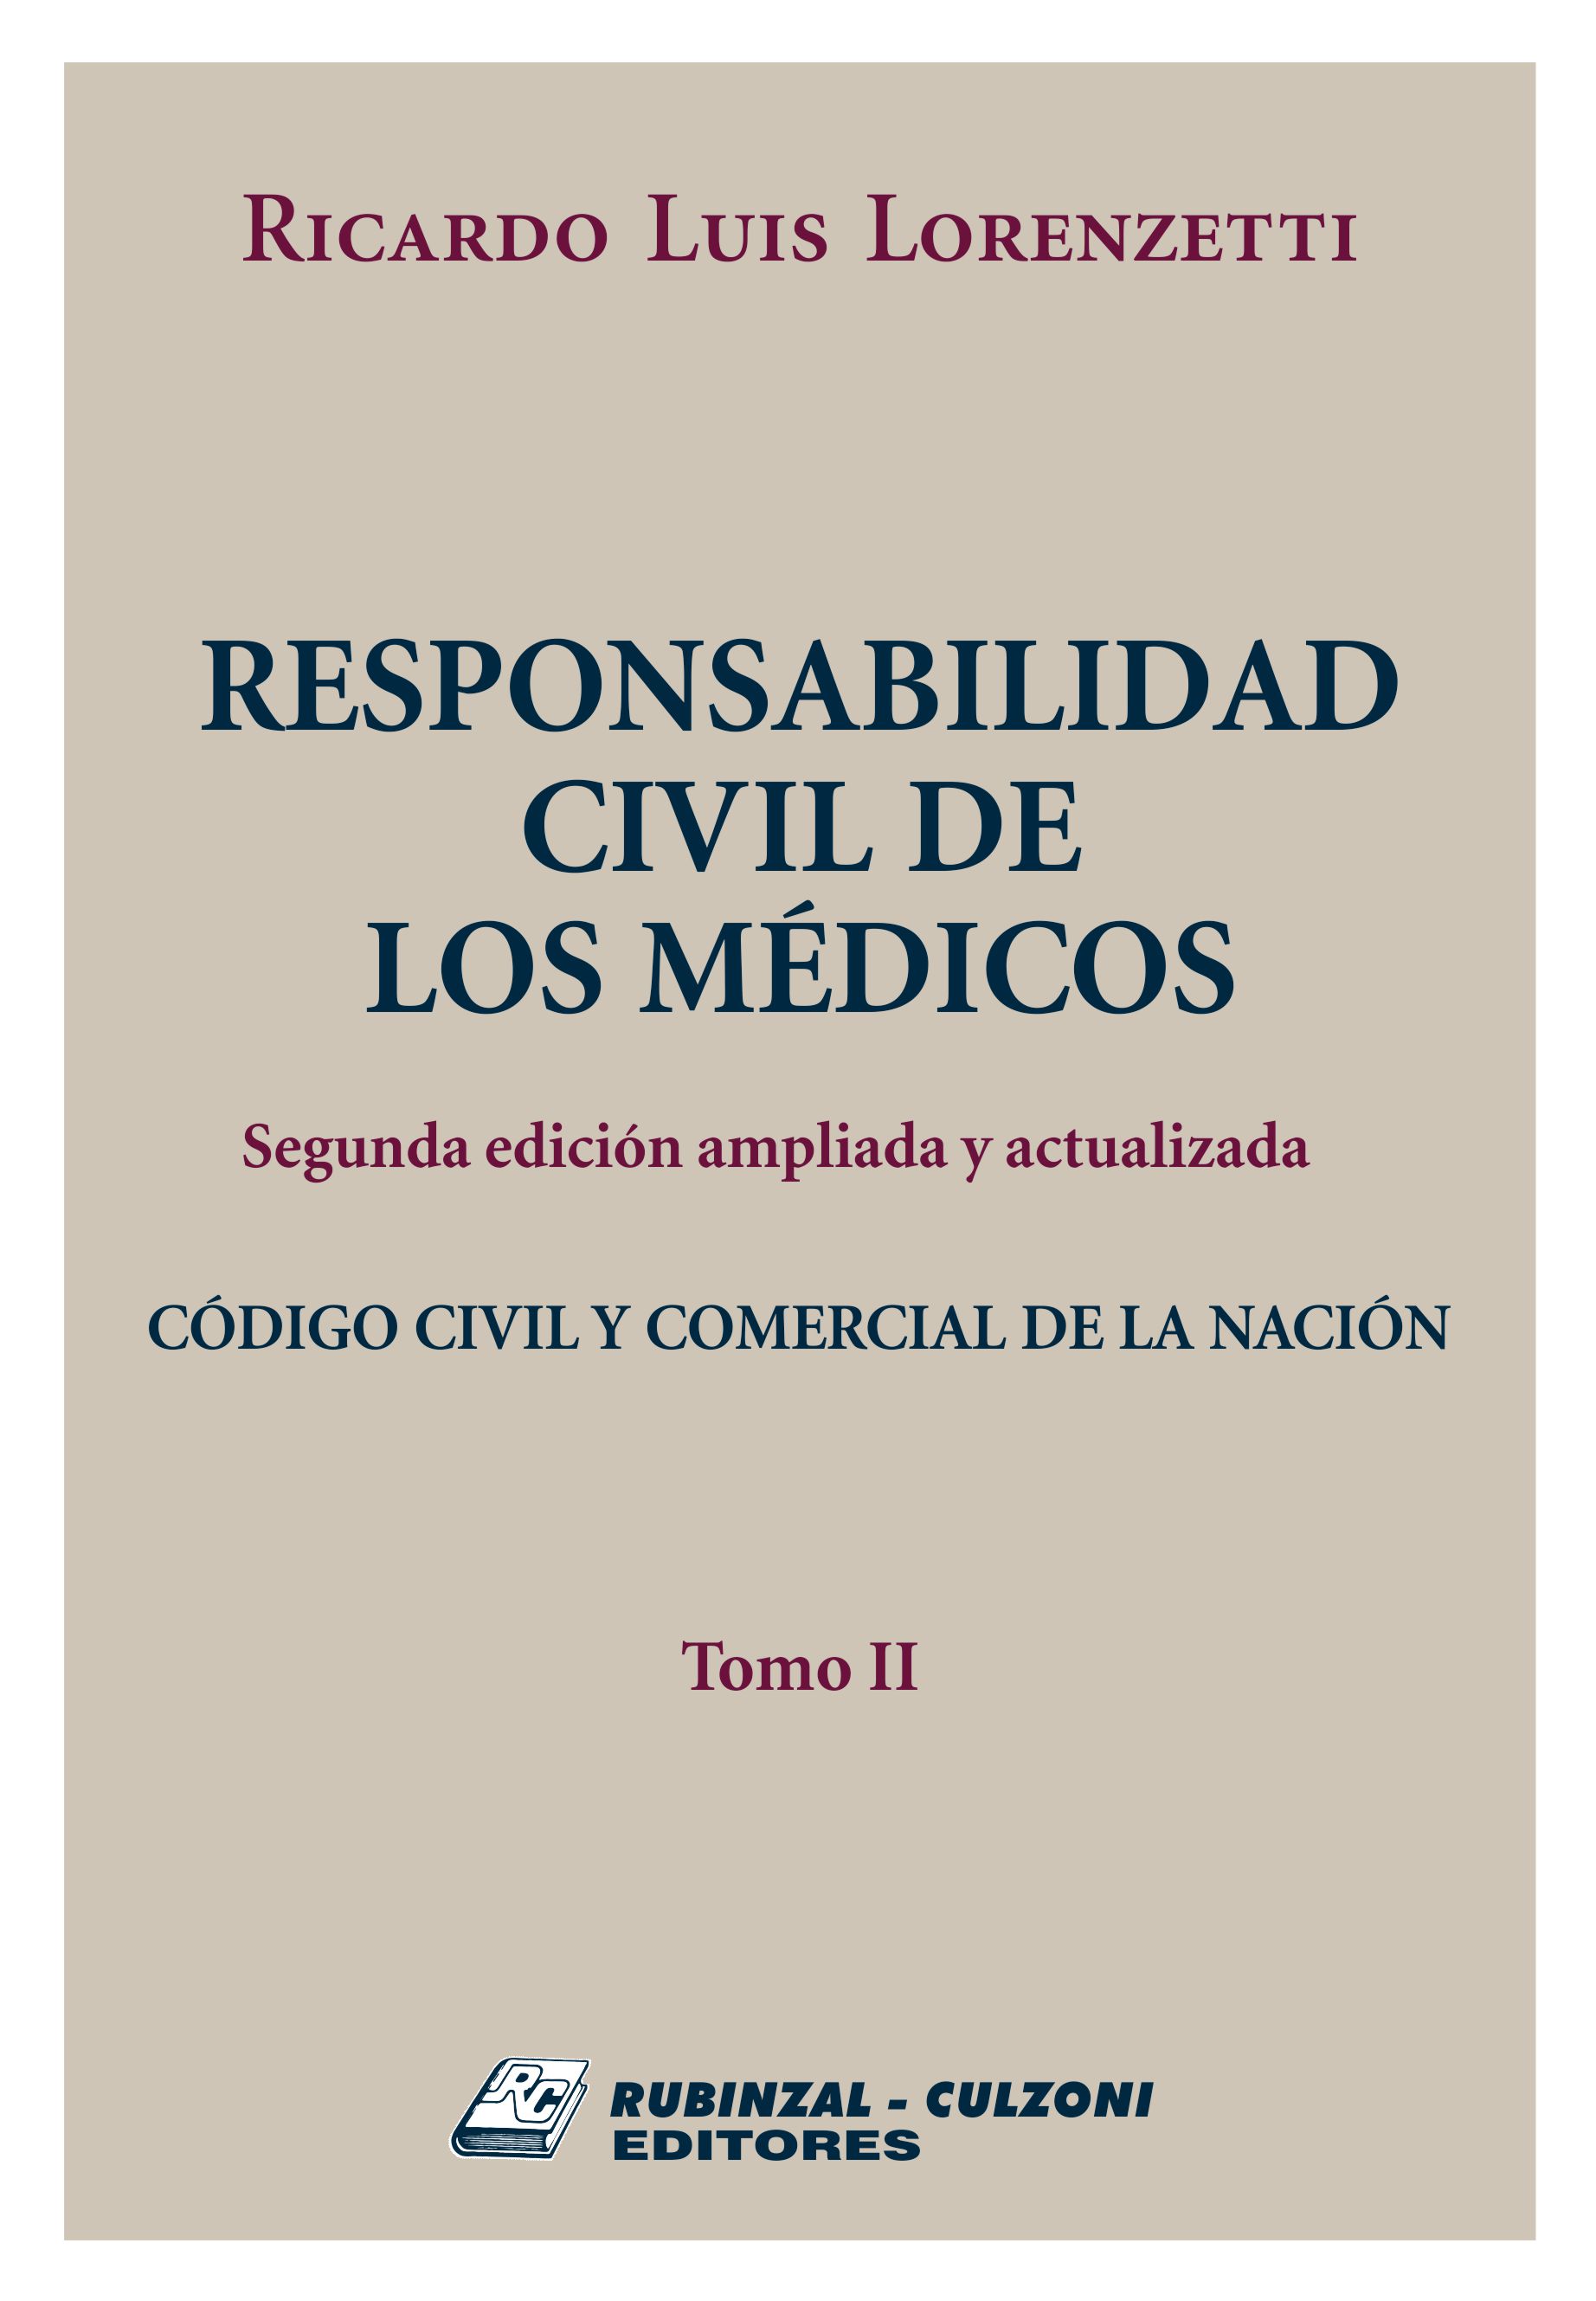 Responsabilidad Civil de los Médicos. 2ª Edición ampliada y actualizada. - Tomo II.